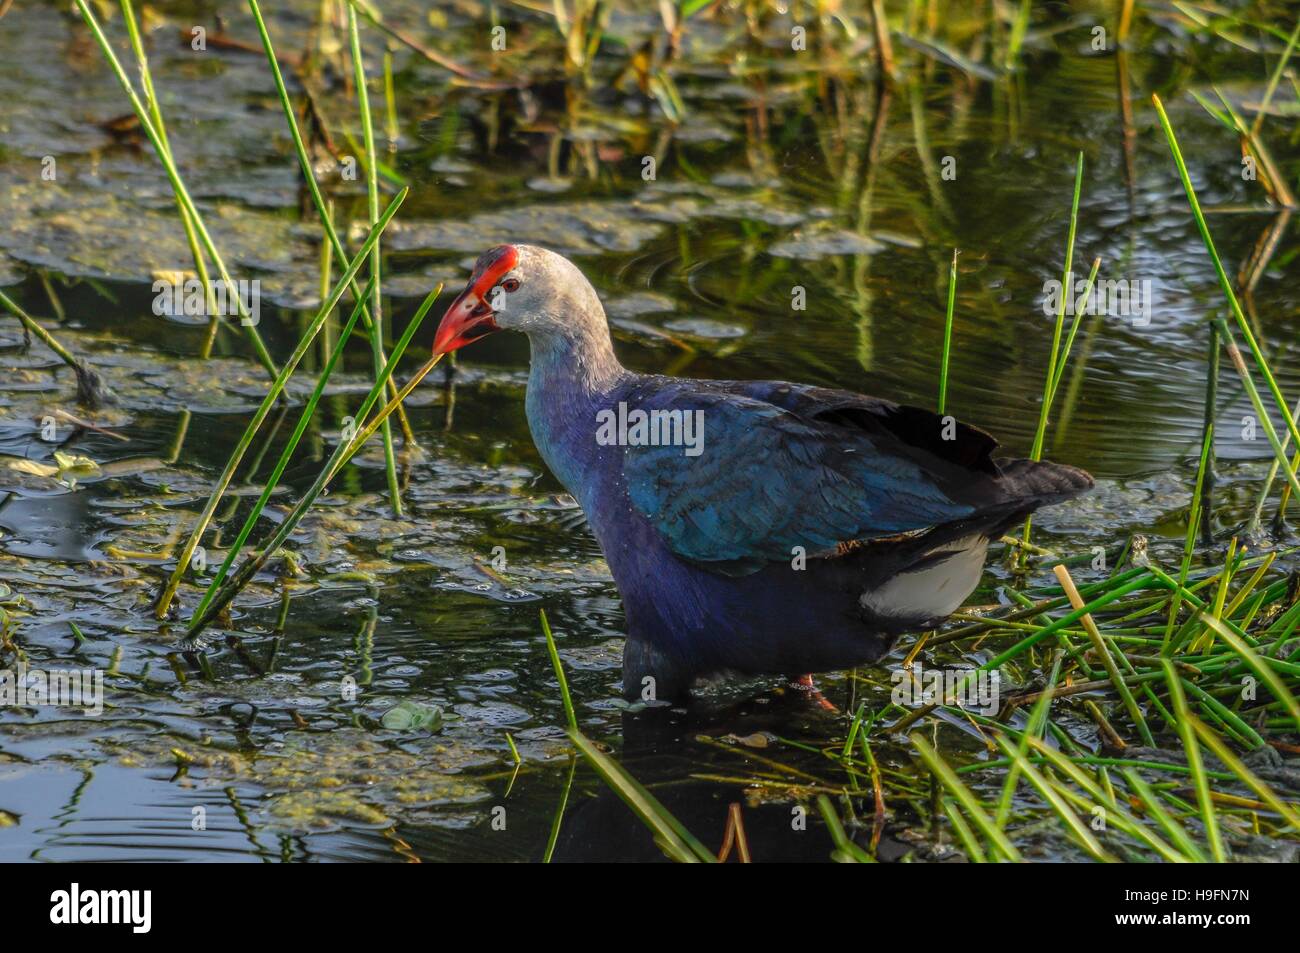 A testa grigia palude gallina a piedi in zone umide in Florida, Stati Uniti d'America. Foto Stock